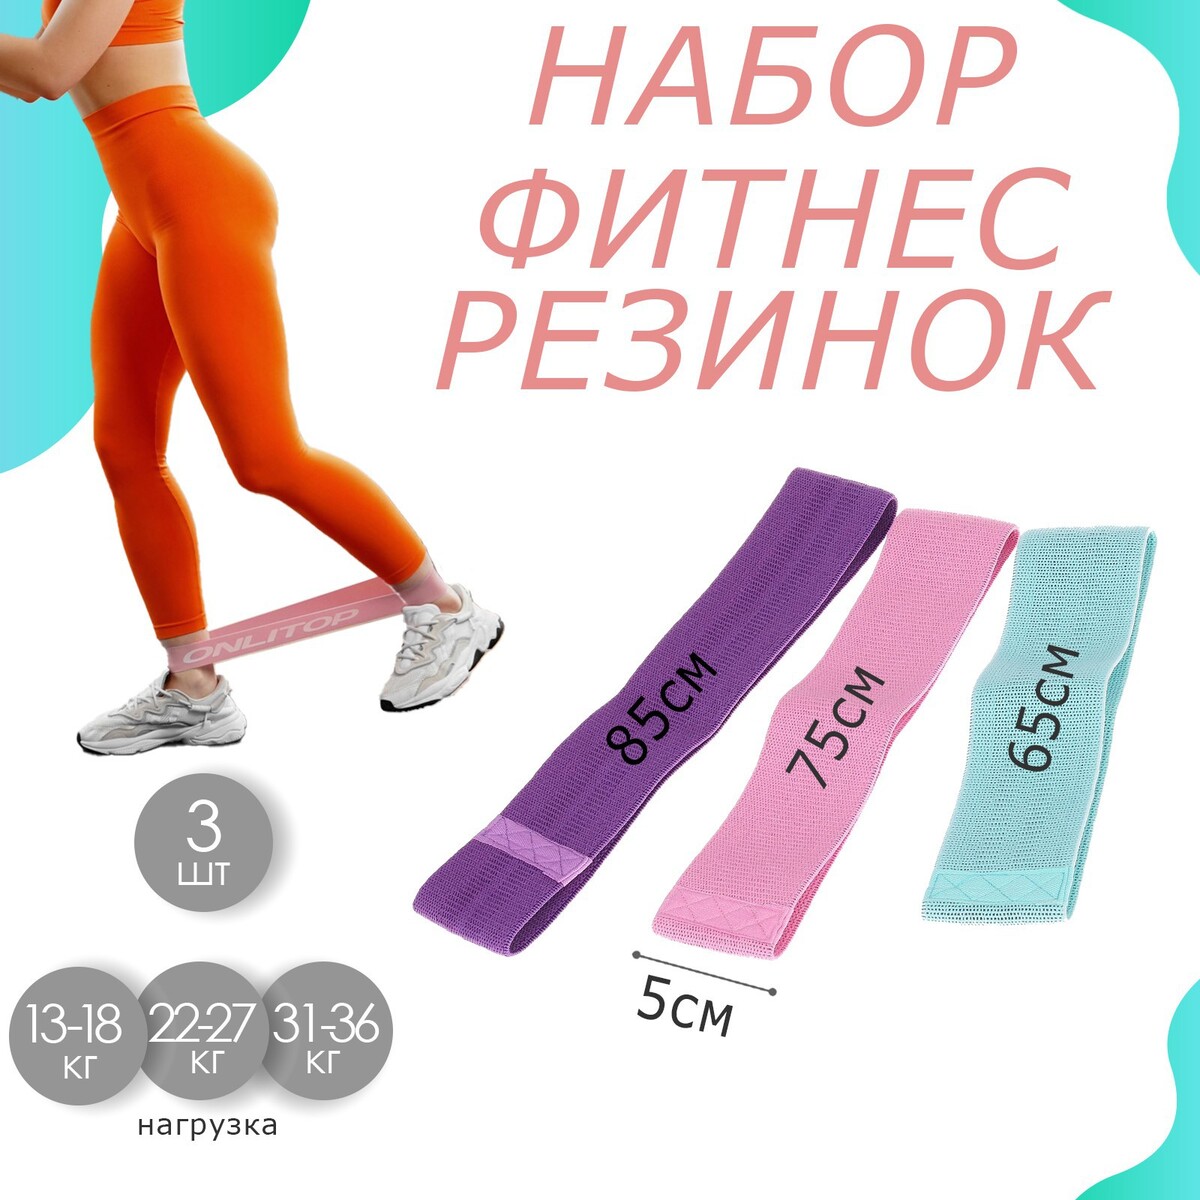 Набор фитнес-резинок onlitop: light, medium, heavy набор фитнес резинок 5 шт t2022 ht040